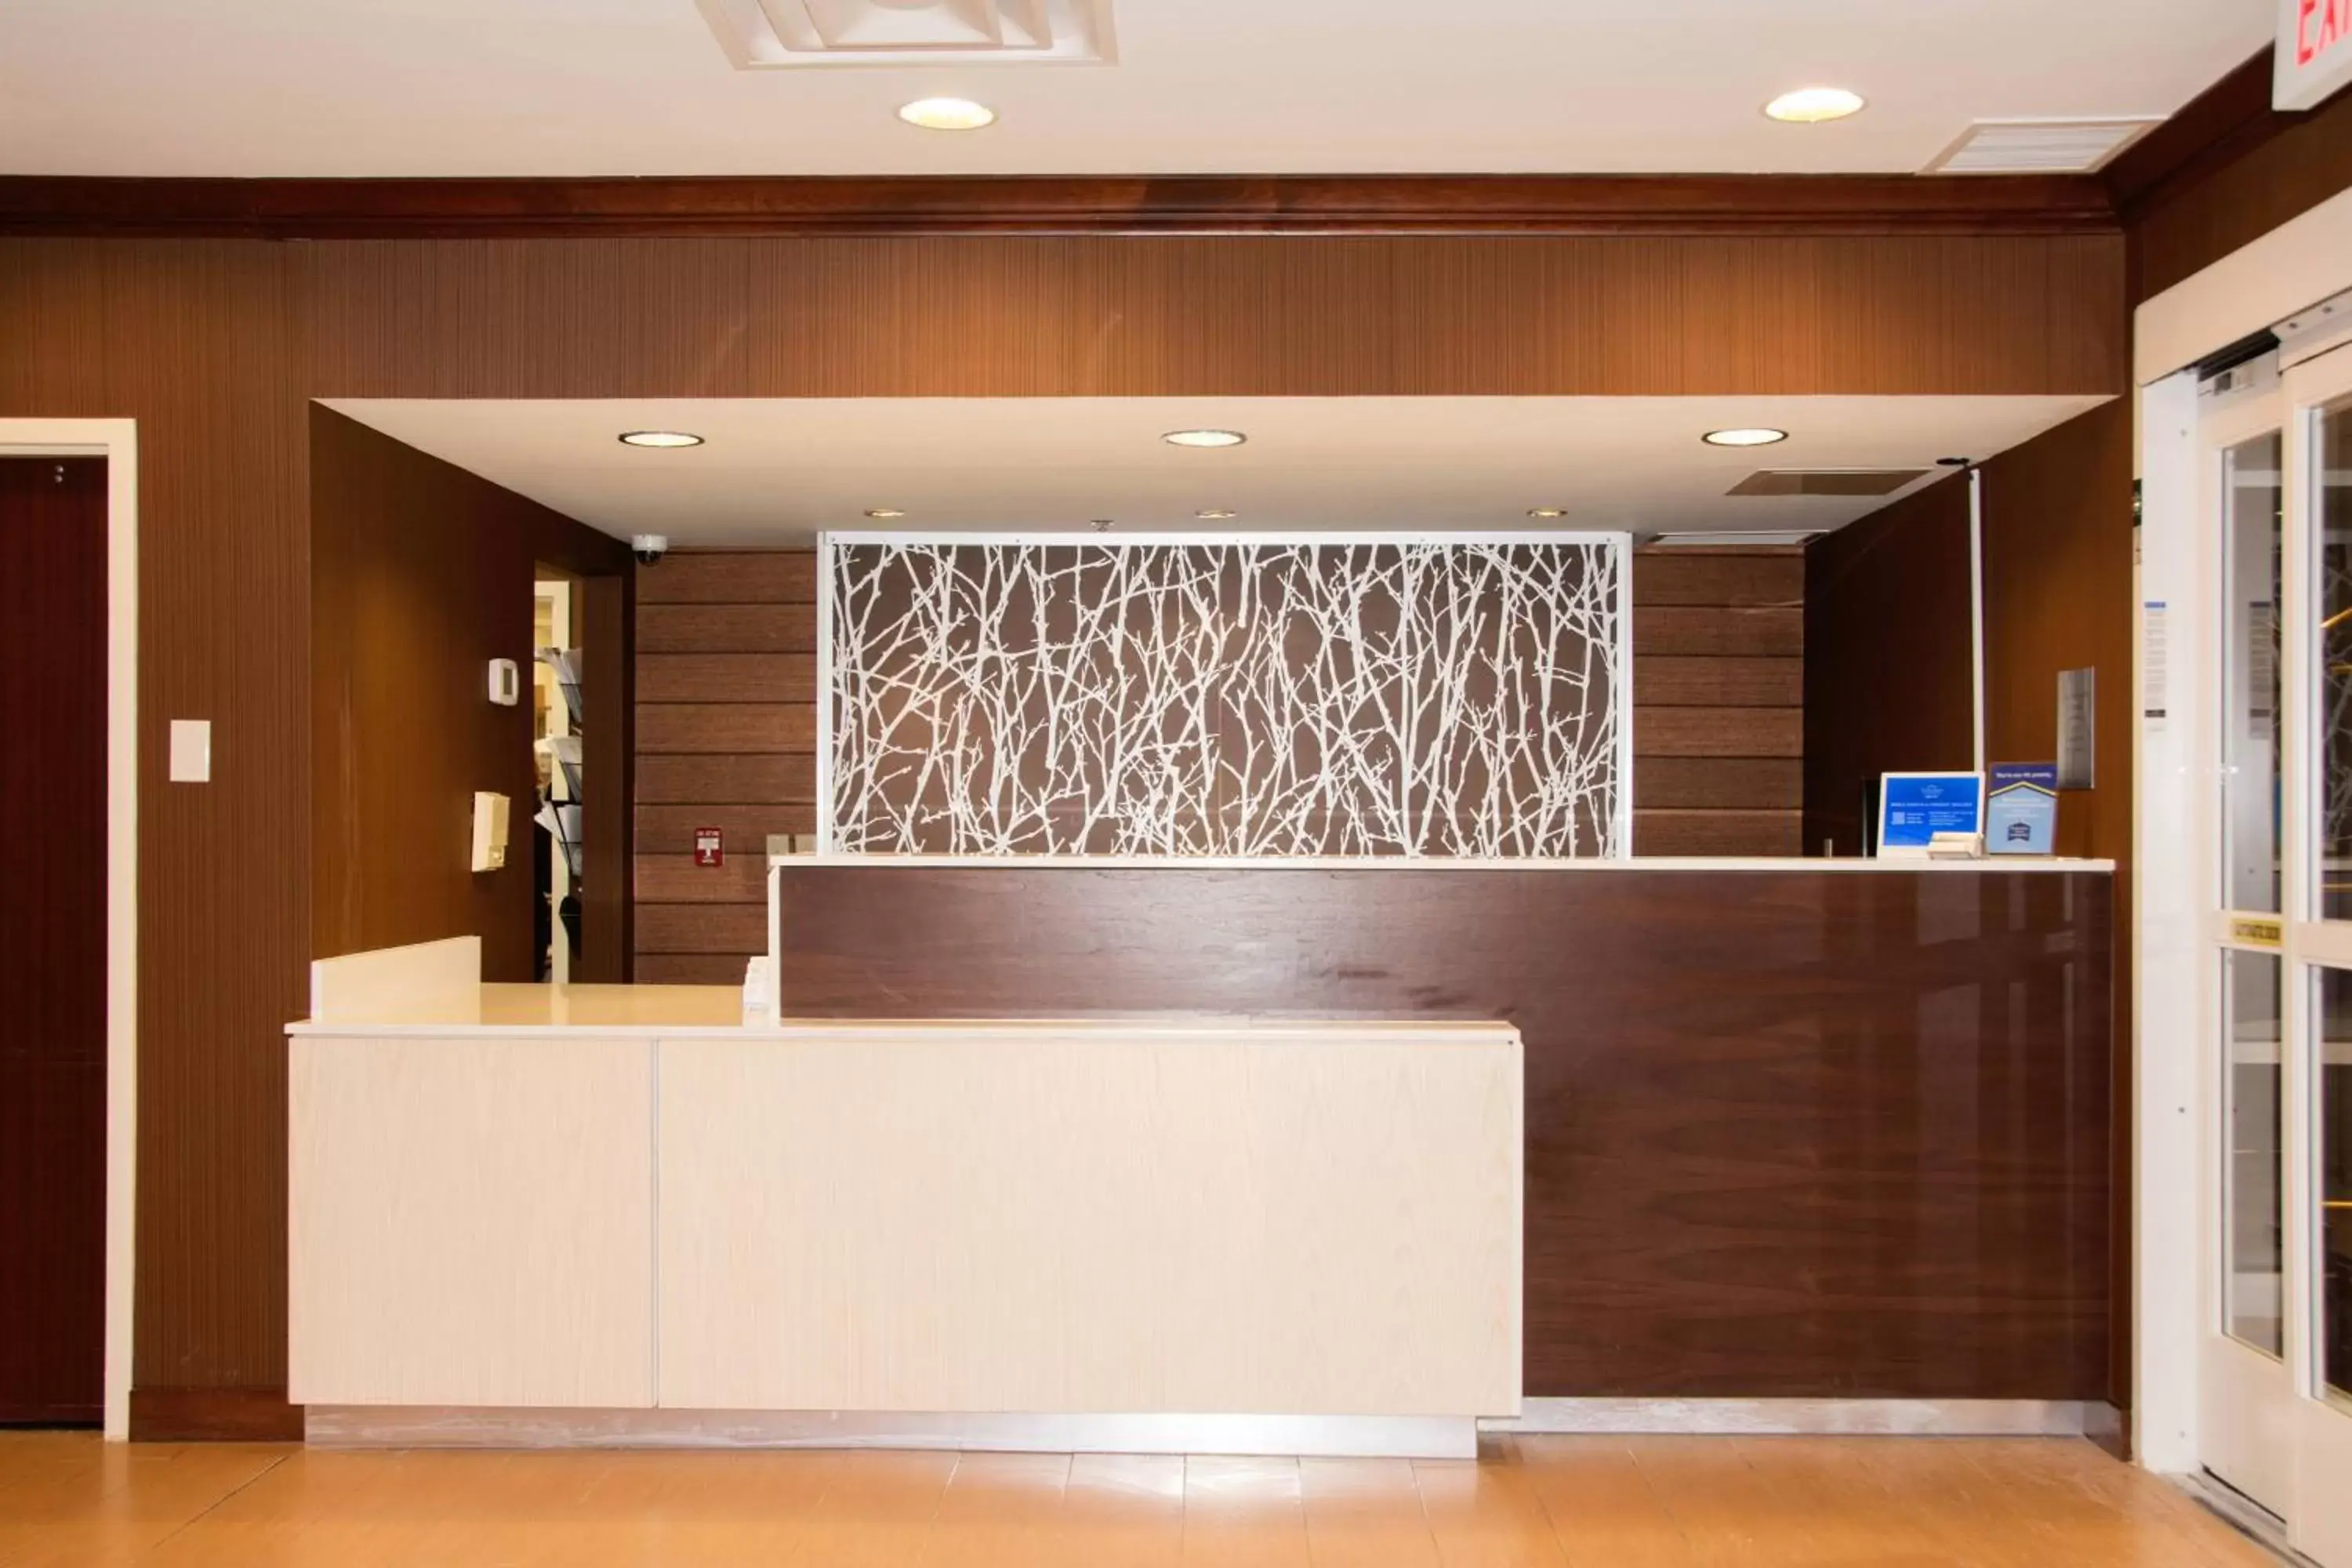 Lobby or reception, Lobby/Reception in Fairfield Inn & Suites Butler